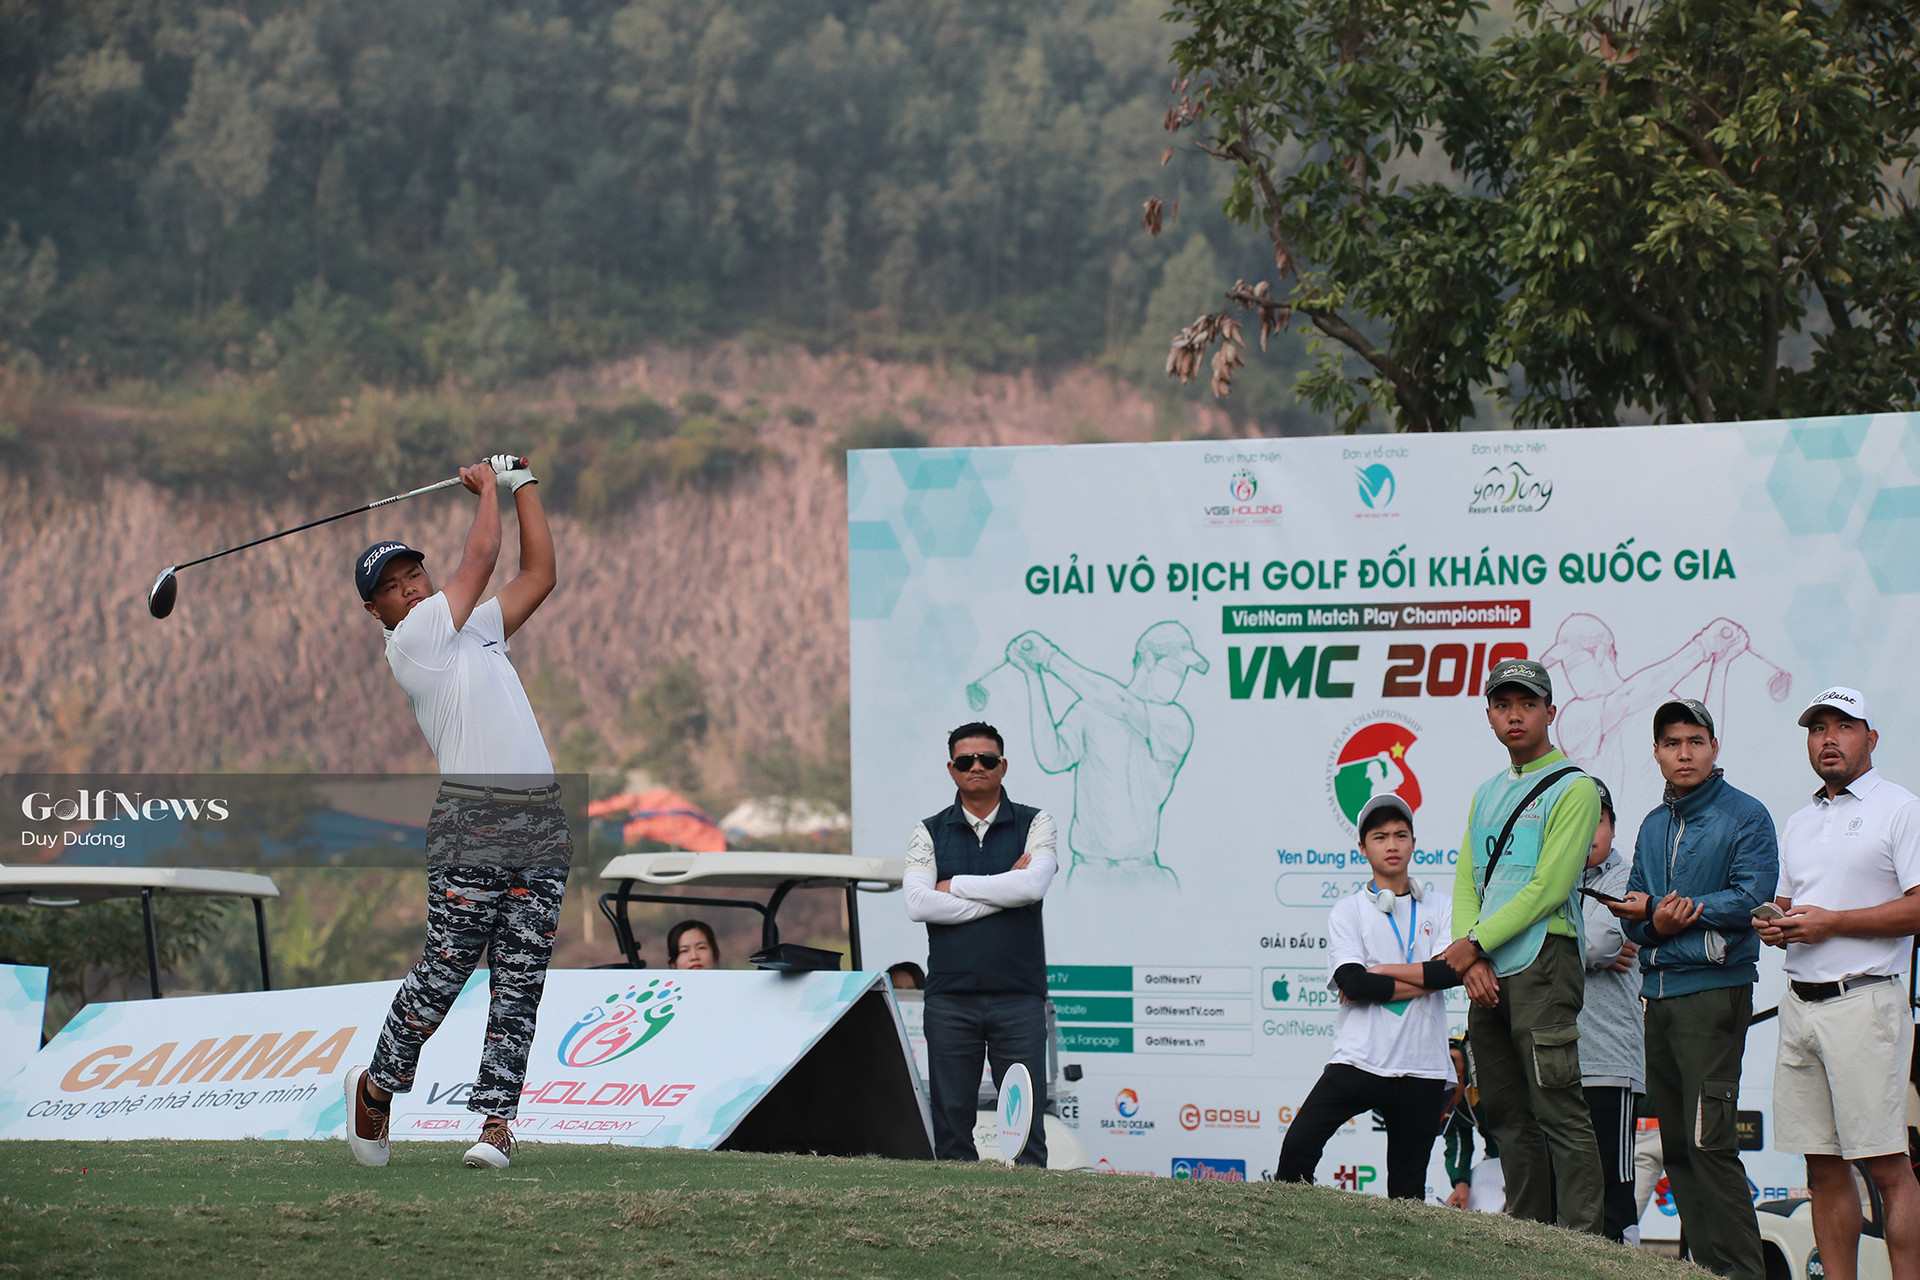 VMC 2020: Bước tiến thúc đẩy phong trào golf trẻ - Ảnh 3.